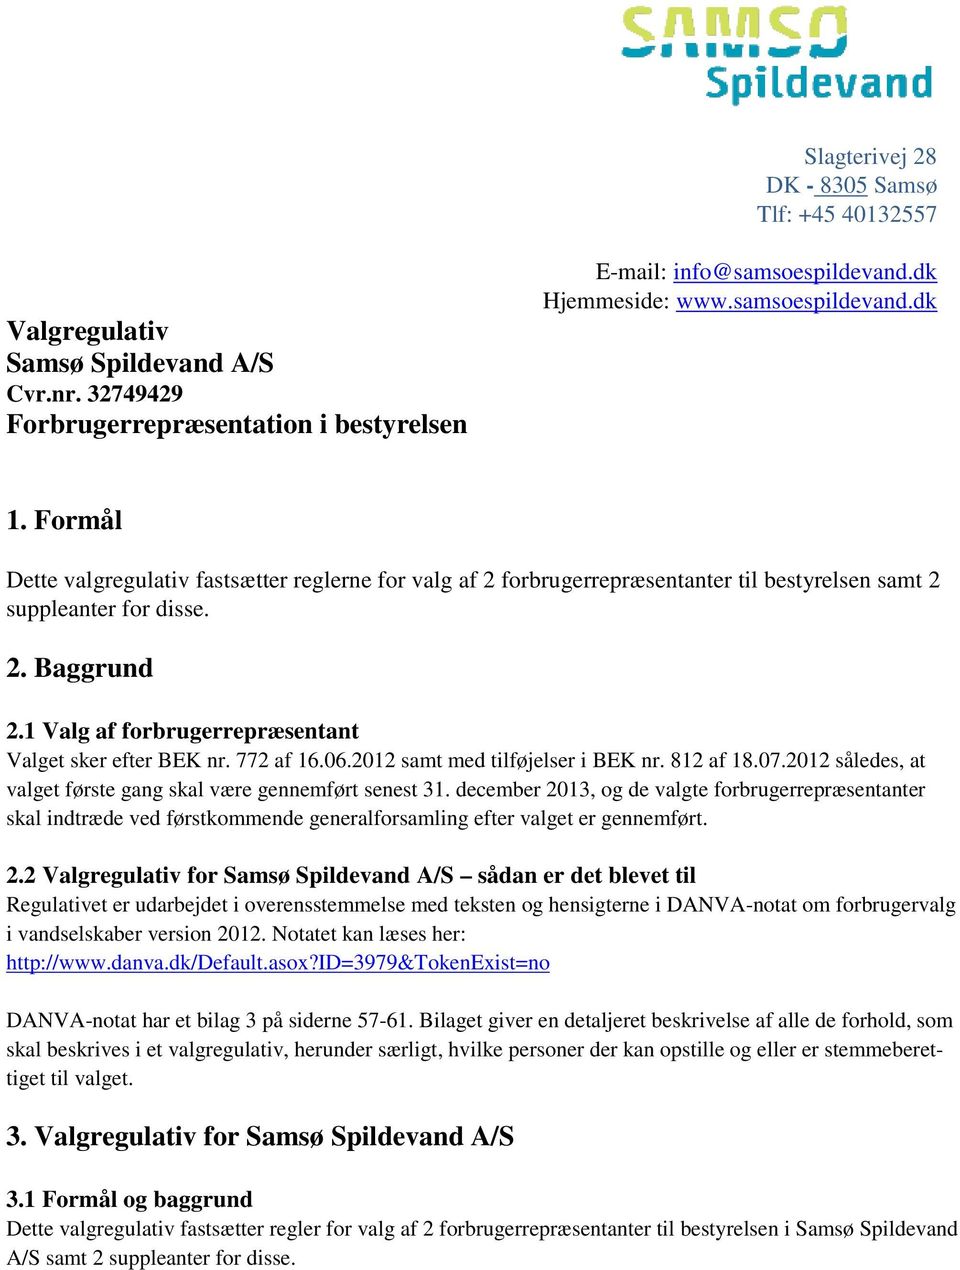 Valgregulativ for Samsø Spildevand A/S 2.1 Valg af forbrugerrepræsentant Valget sker efter BEK nr. 772 af 16.06.2012 samt med tilføjelser i BEK nr. 812 af 18.07.